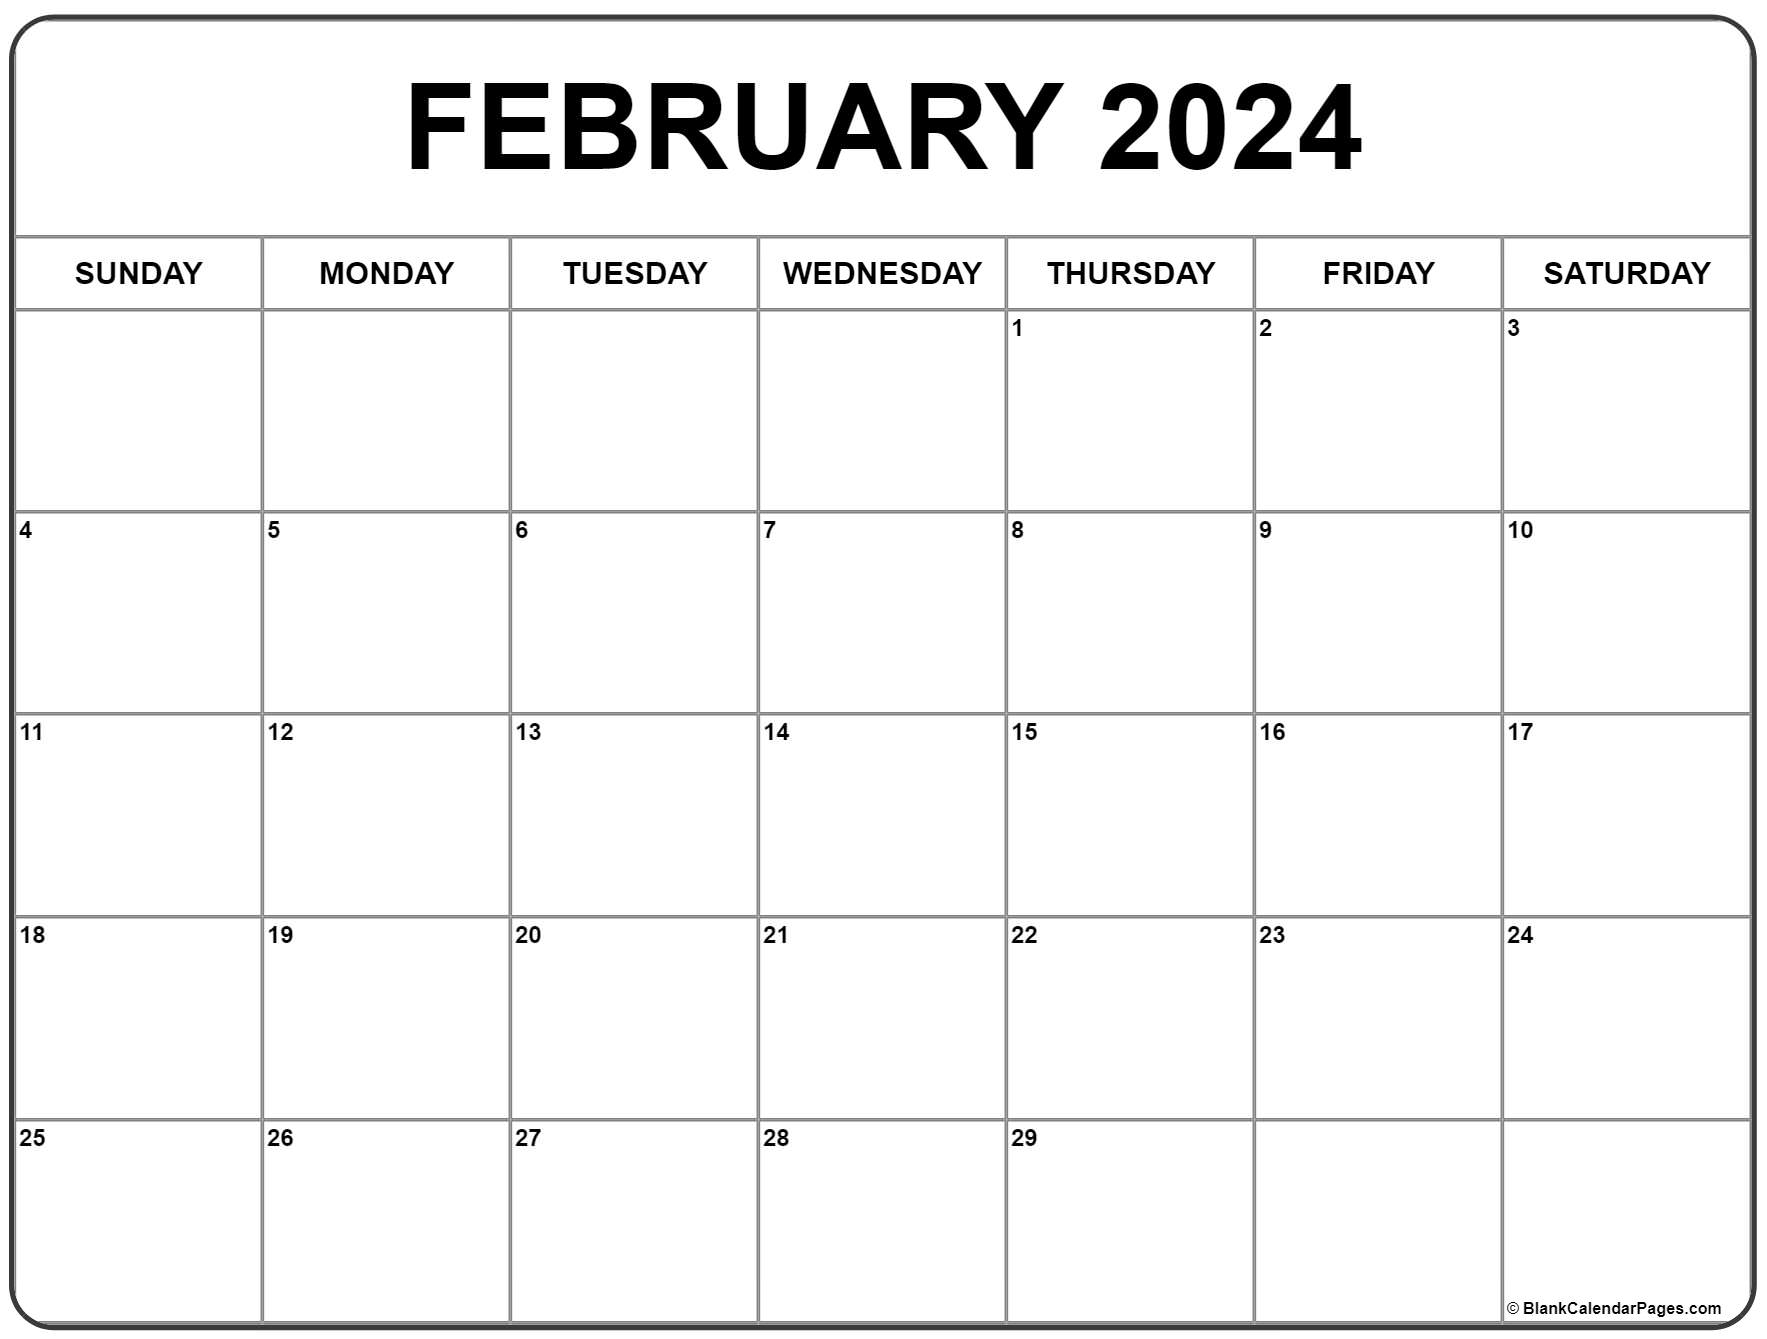 February 2024 Calendar | Free Printable Calendar for Feb 2024 Calendar Printable Free